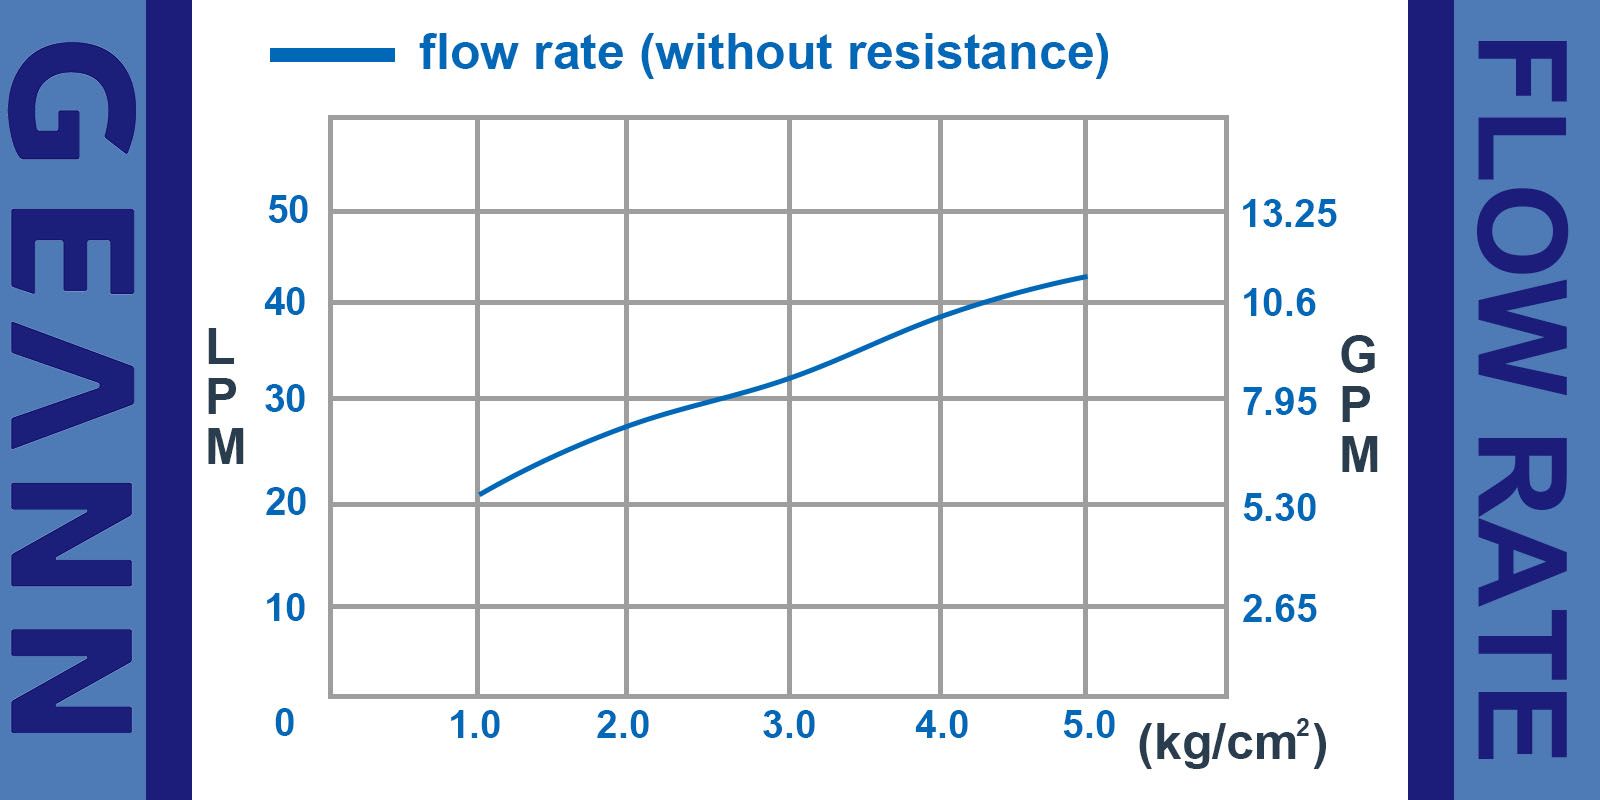 Curva de taxa de fluxo de tipo DHDU